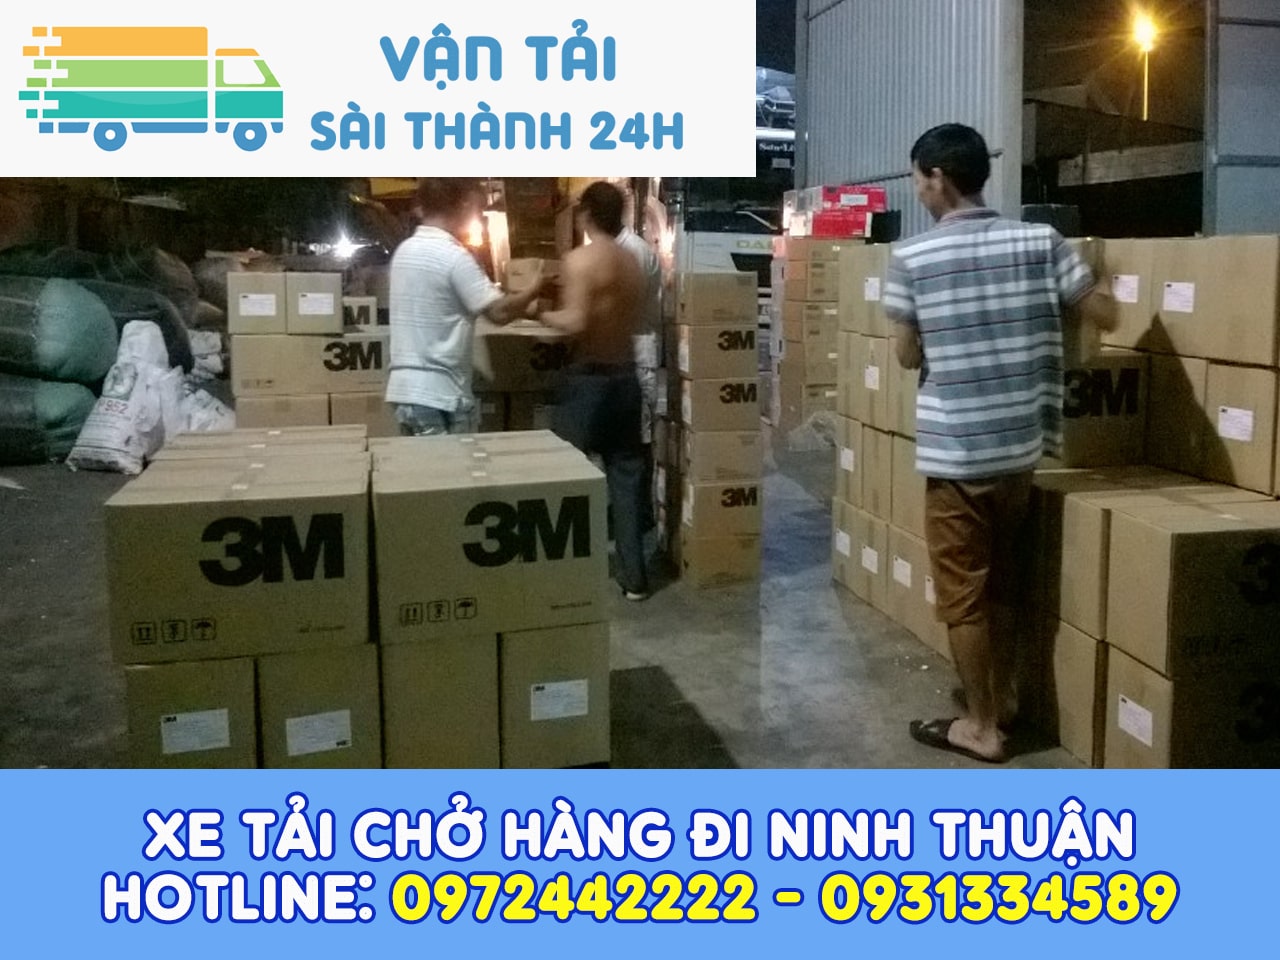 Xe tải chở hàng đi Kon Tum | Công ty vận tải Sài Thành 24H